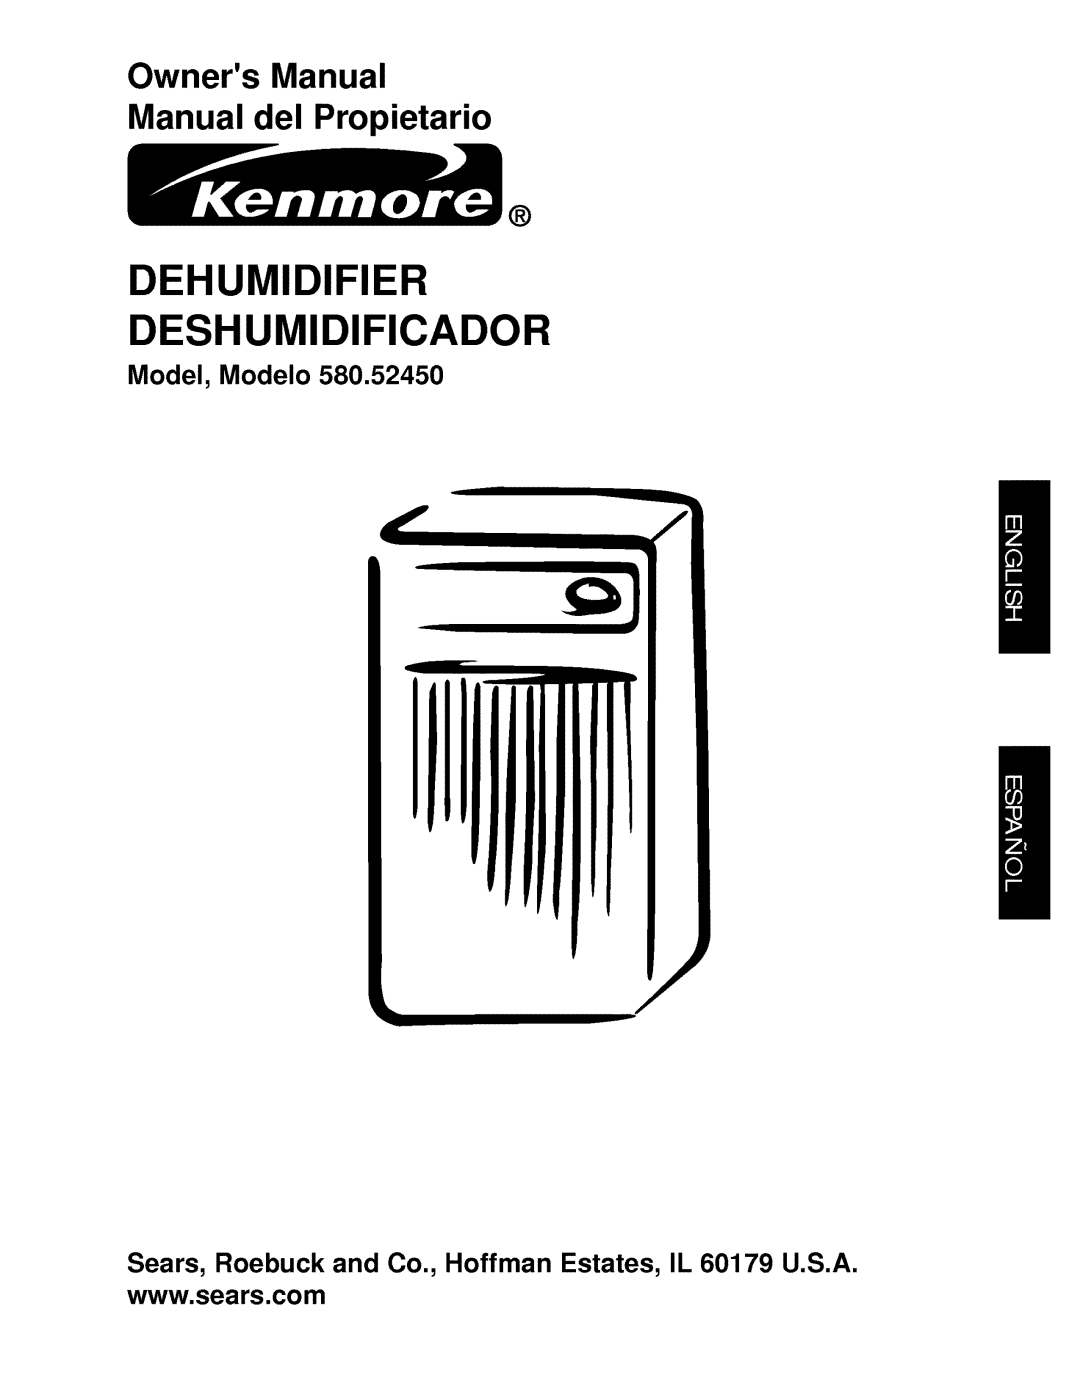 Kenmore 580.5245 owner manual Model, Modelo, Dehumidifier Deshumidificador 